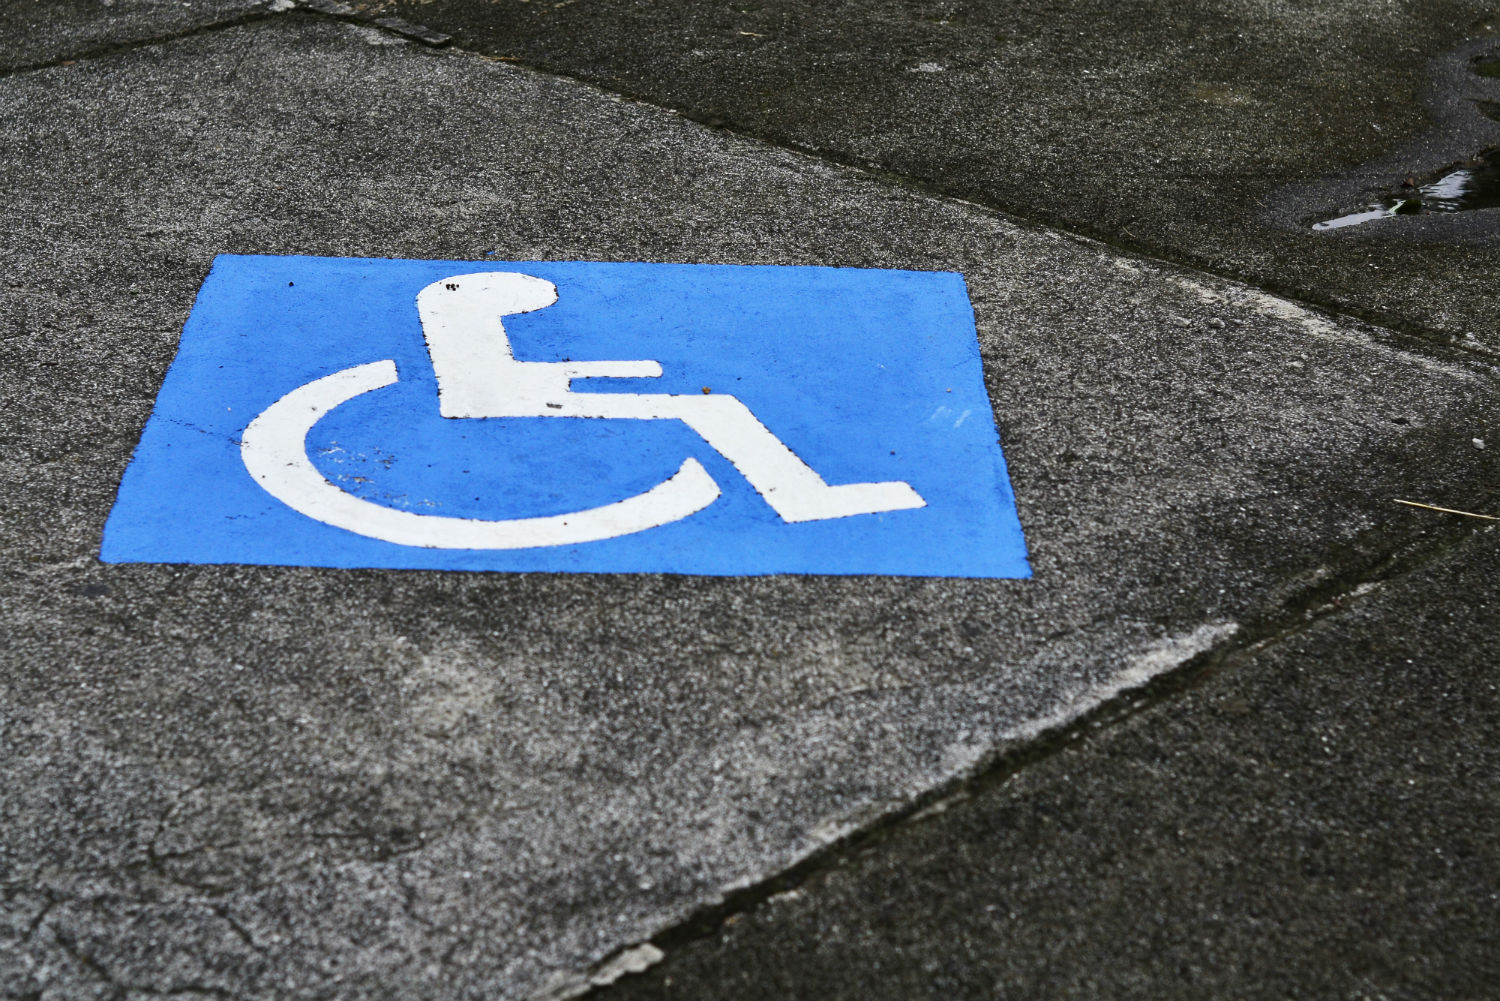 Blue handicap icon painted on asphalt parking spot.